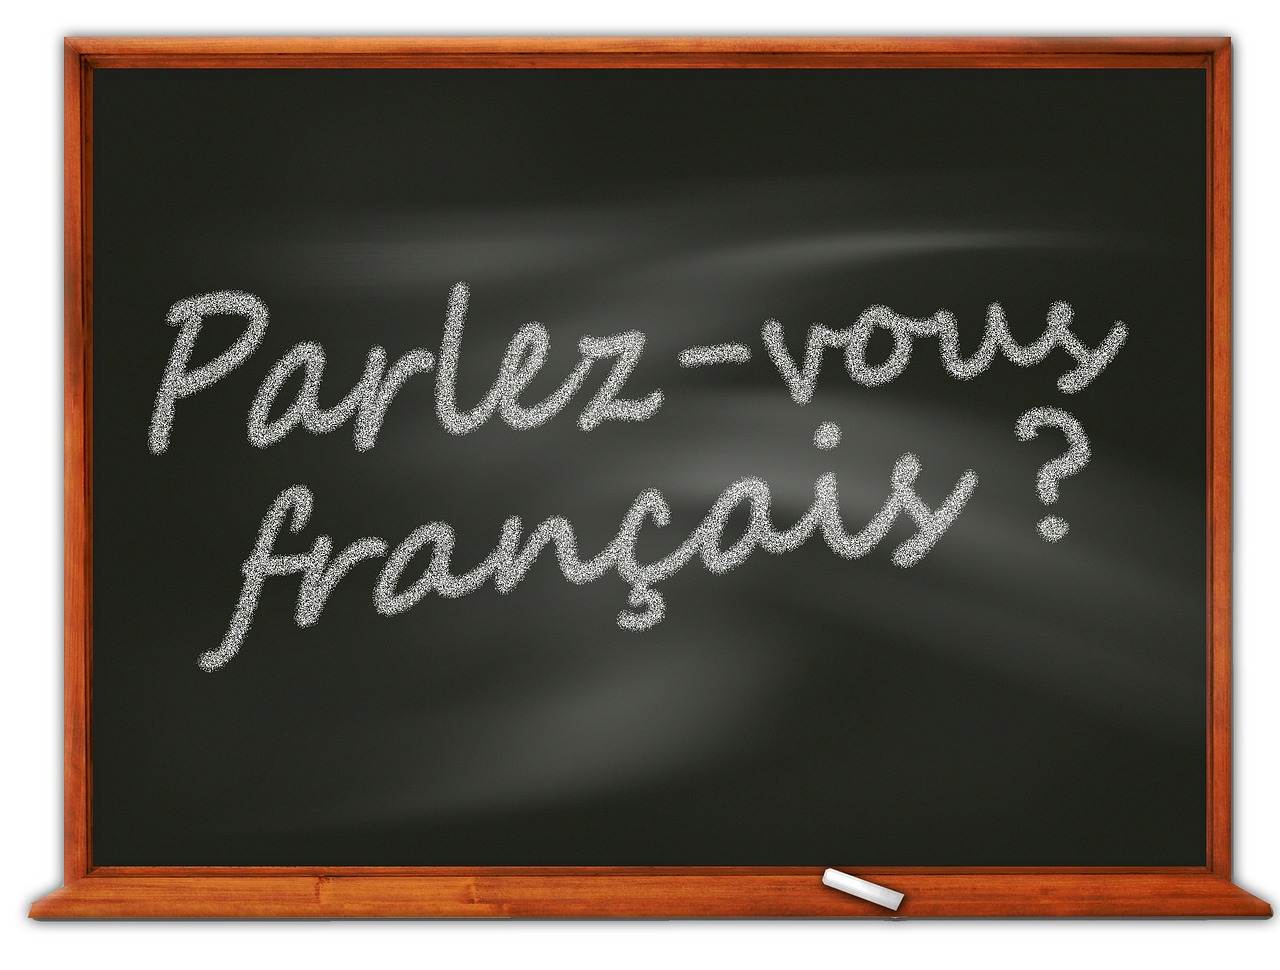 Frans voor Franstaligen